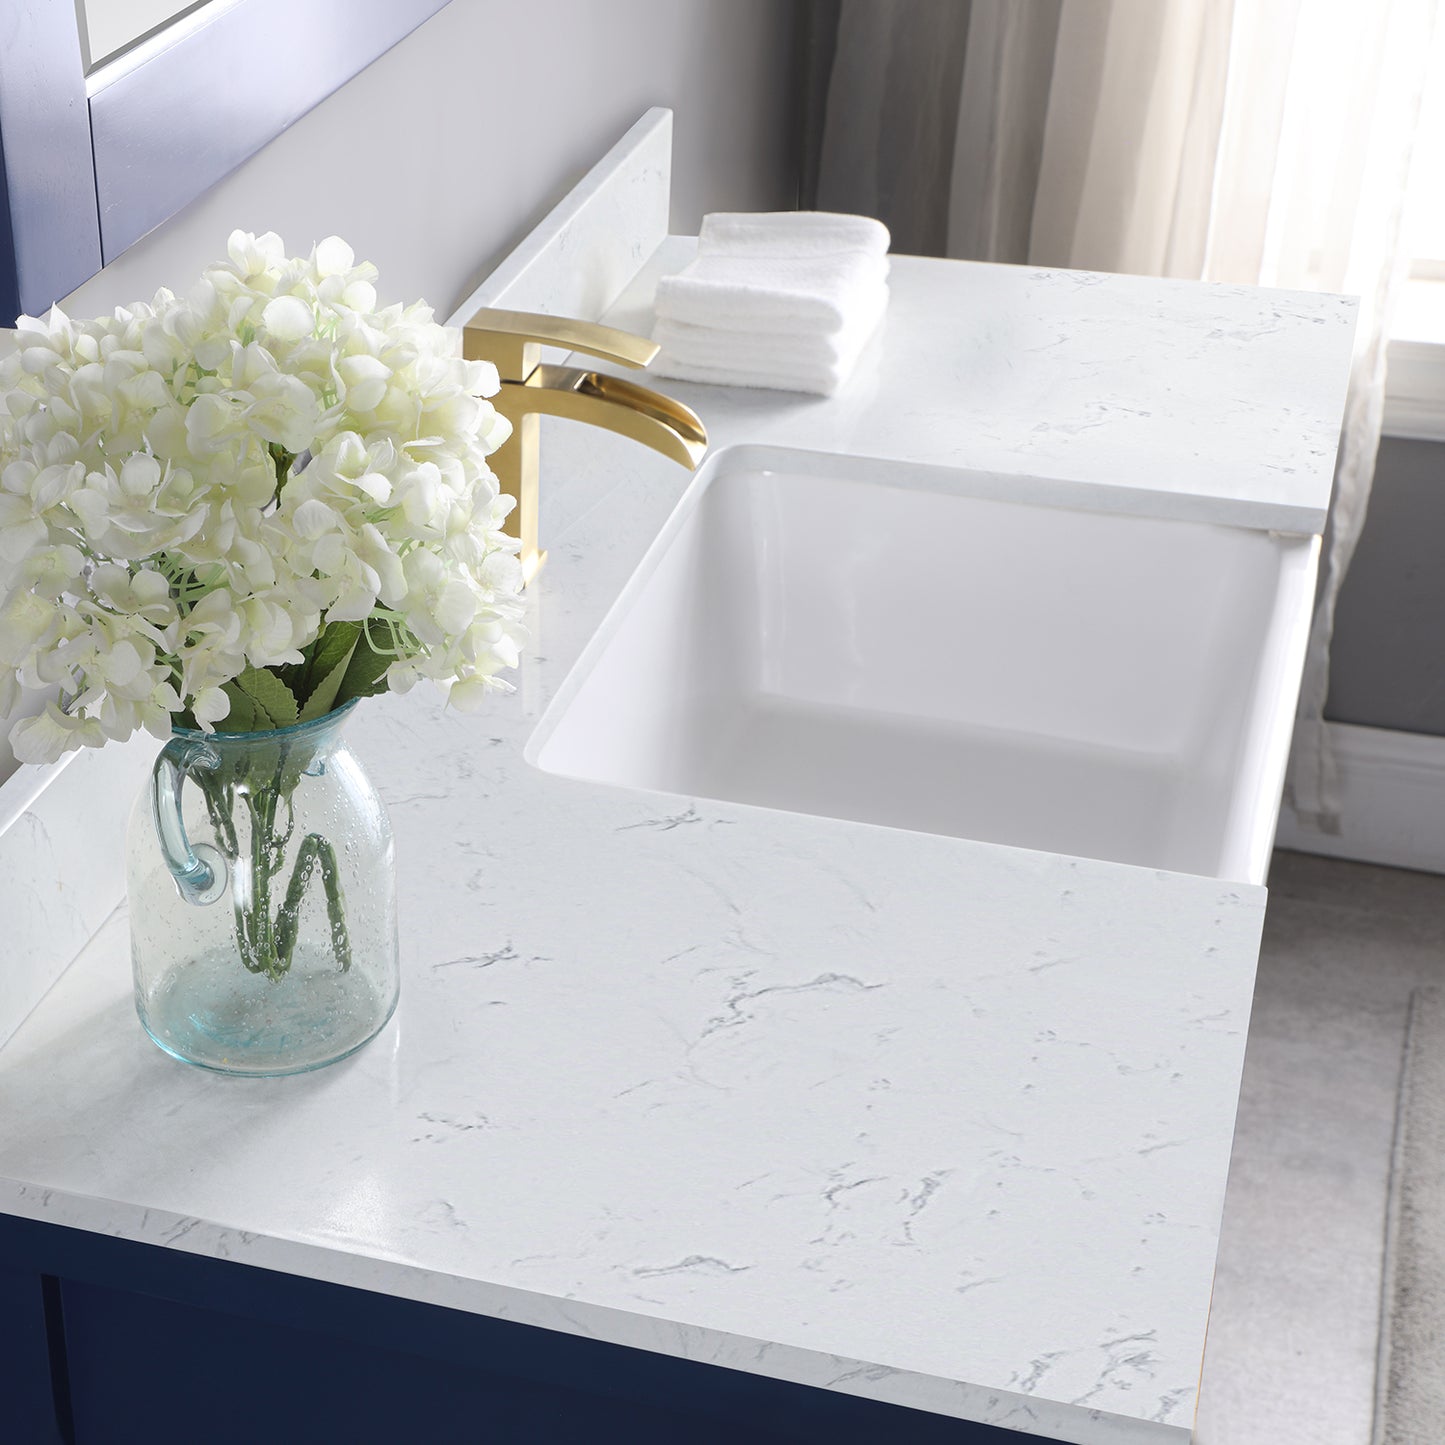 Georgia 48" Single Bathroom Vanity Set with Aosta White Composite Stone Top with White Farmhouse Basin- Altair Designs